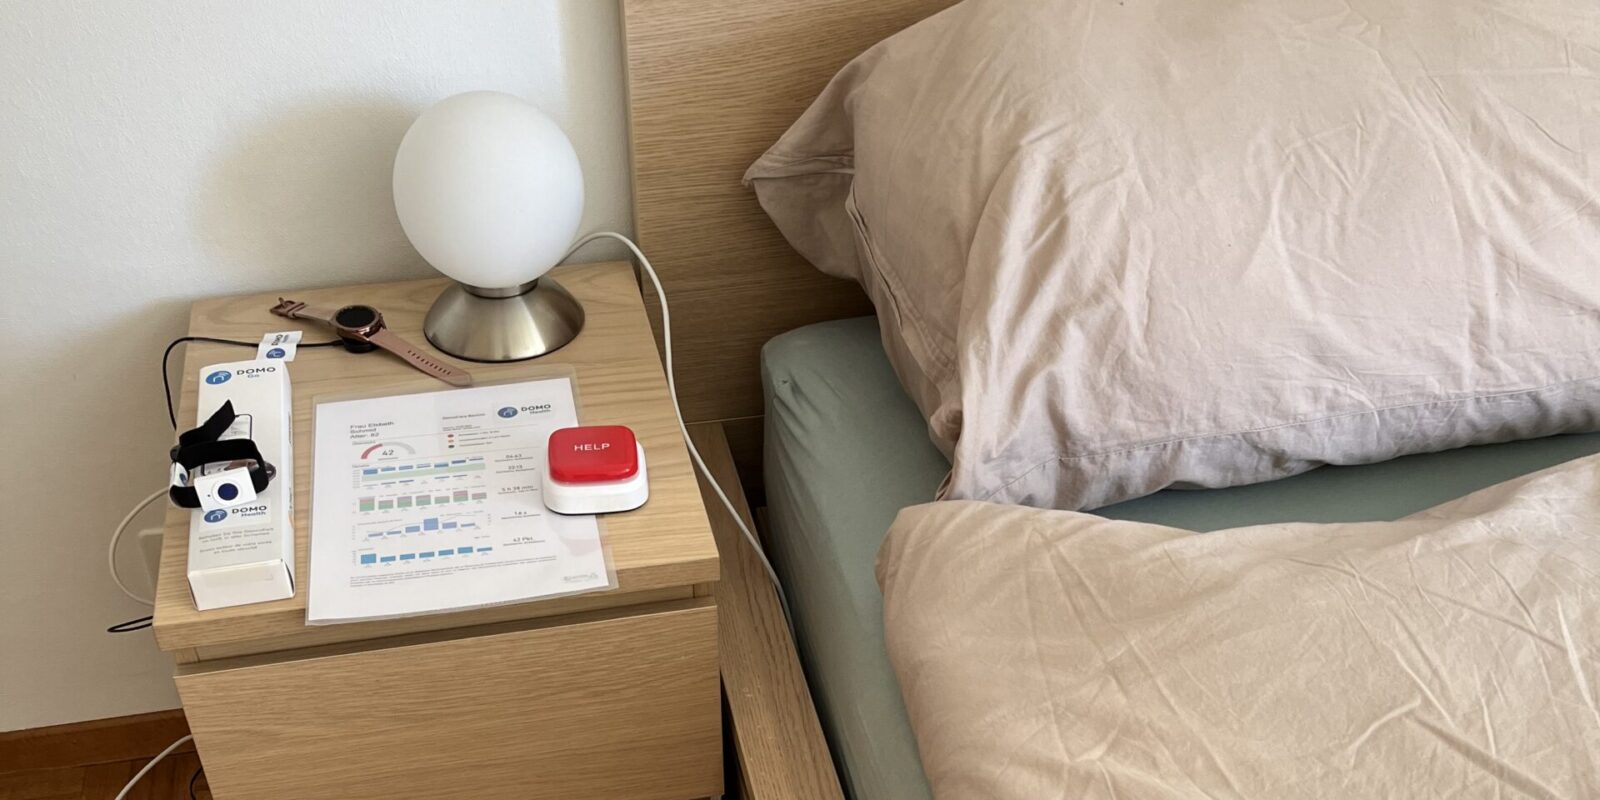 Beispiel Schlafzimmer: Der Notfallkopf kann überall hingelegt werden.